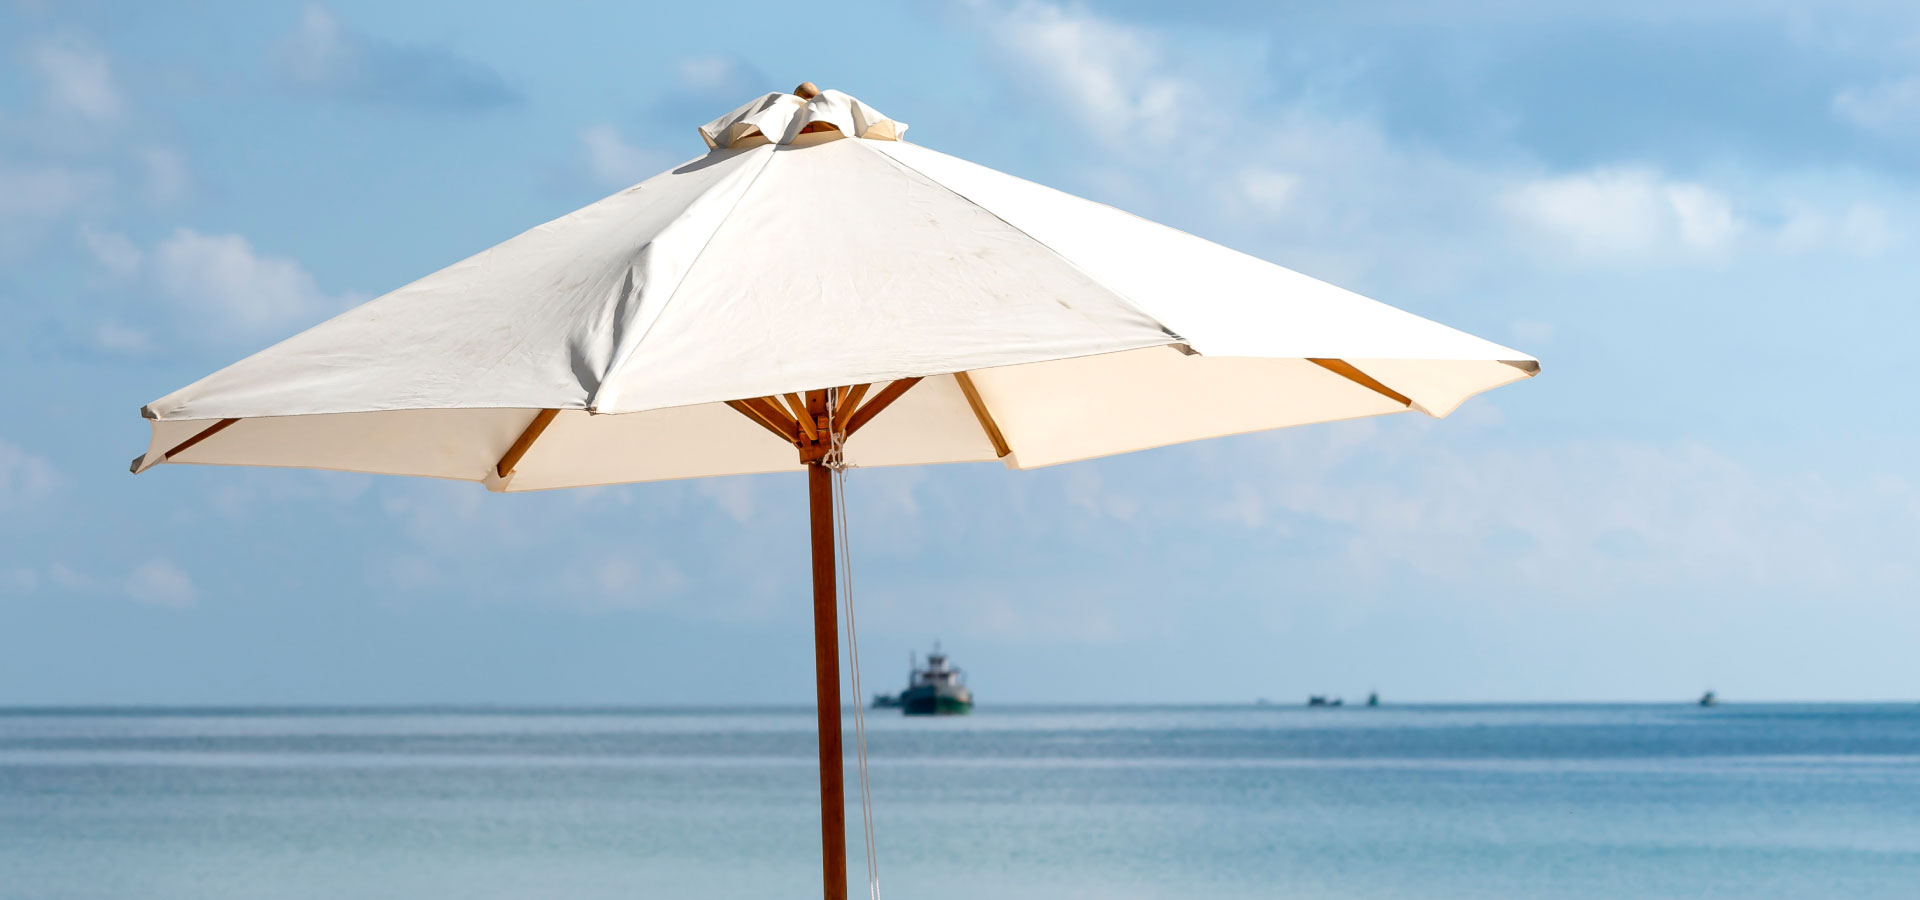 Wysoki beżowy parasol na drewnianej konstrukcji na tle błękitnego nieba i morza.